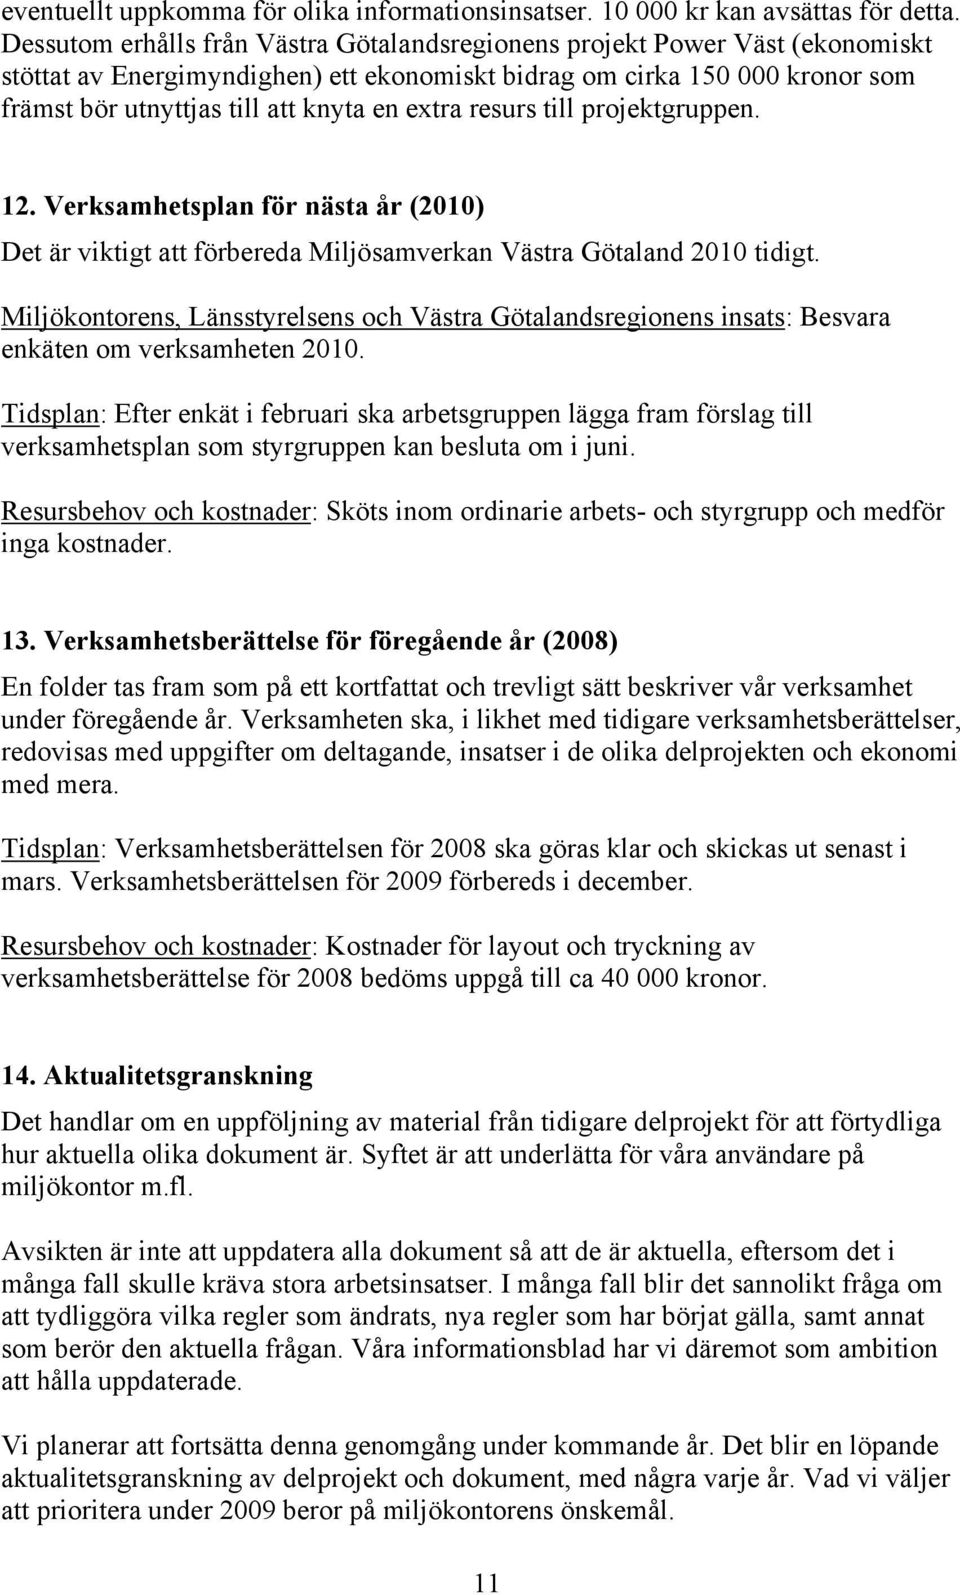 extra resurs till projektgruppen. 12. Verksamhetsplan för nästa år (2010) Det är viktigt att förbereda Miljösamverkan Västra Götaland 2010 tidigt.